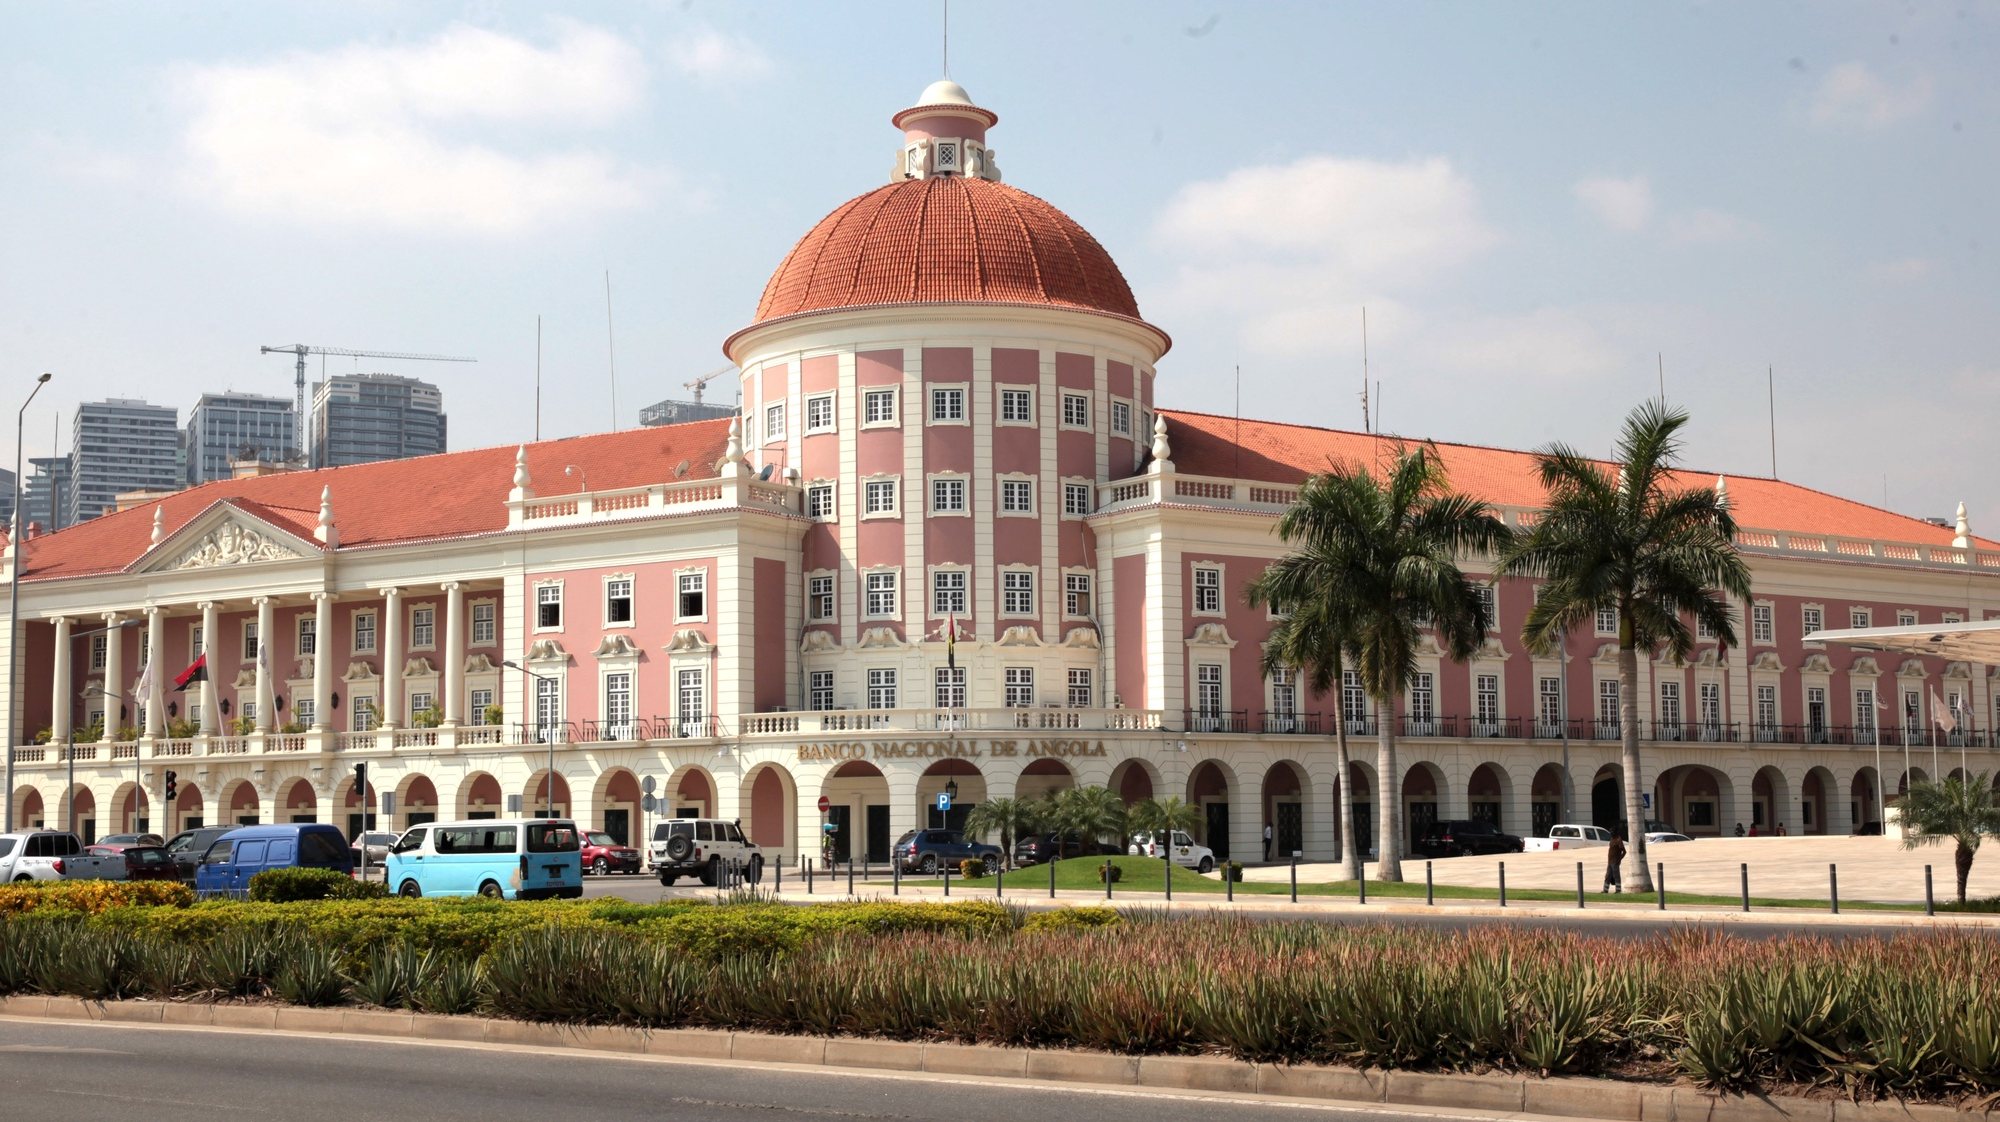 Fachada do edifício do Banco Nacional de Angola (BNA), em Luanda, Angola, 07 de julho de 2020. AMPE ROGÉRIO/LUSA